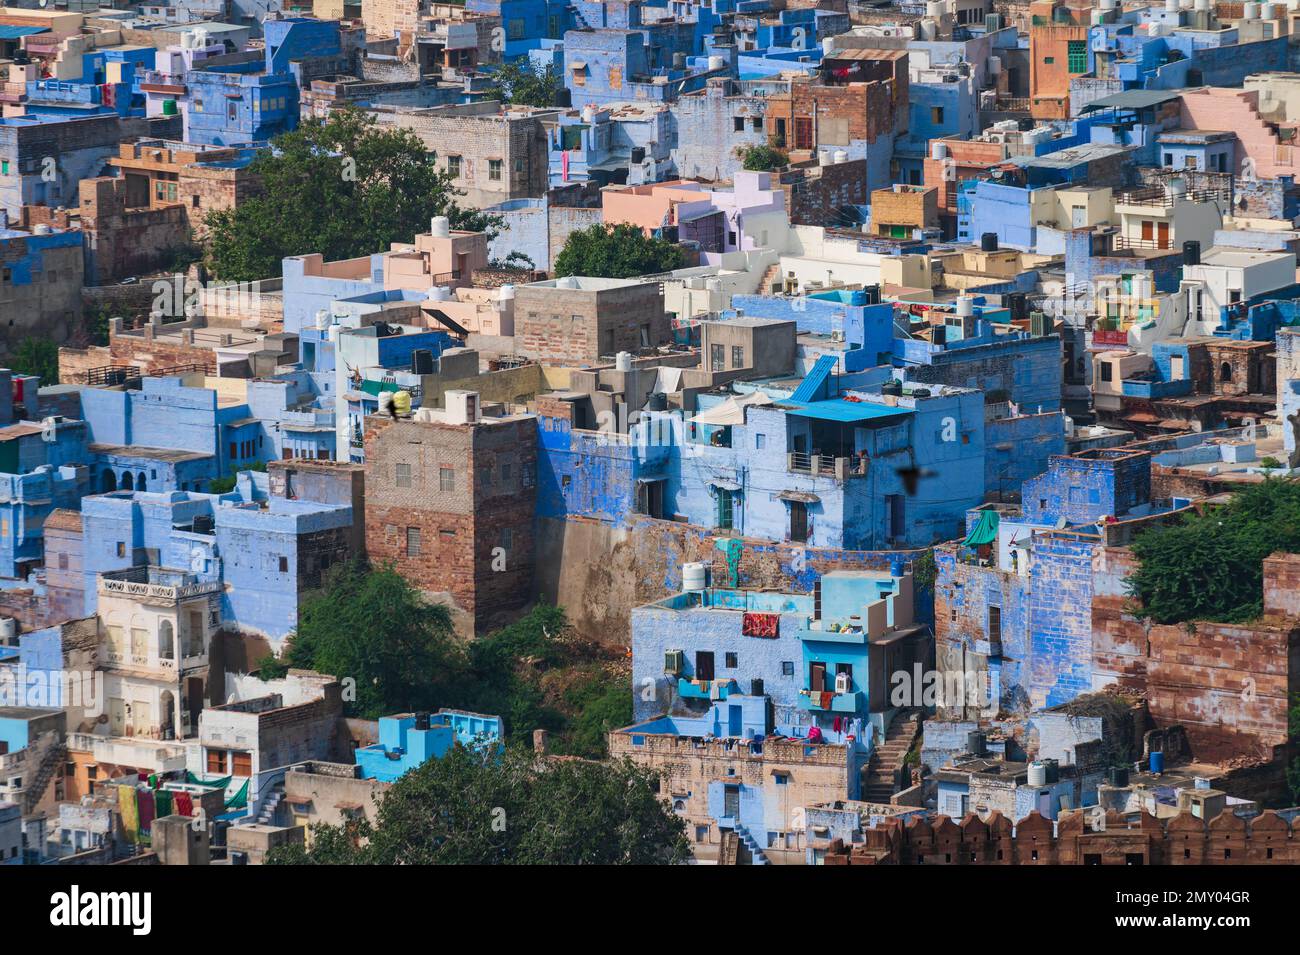 Vue aérienne de la ville bleue, Jodhpur, Rajasthan, Inde. Les Brahmanes résidents adorent le Seigneur Shiva et peignent leurs maisons en bleu comme le bleu est sa couleur préférée. Banque D'Images